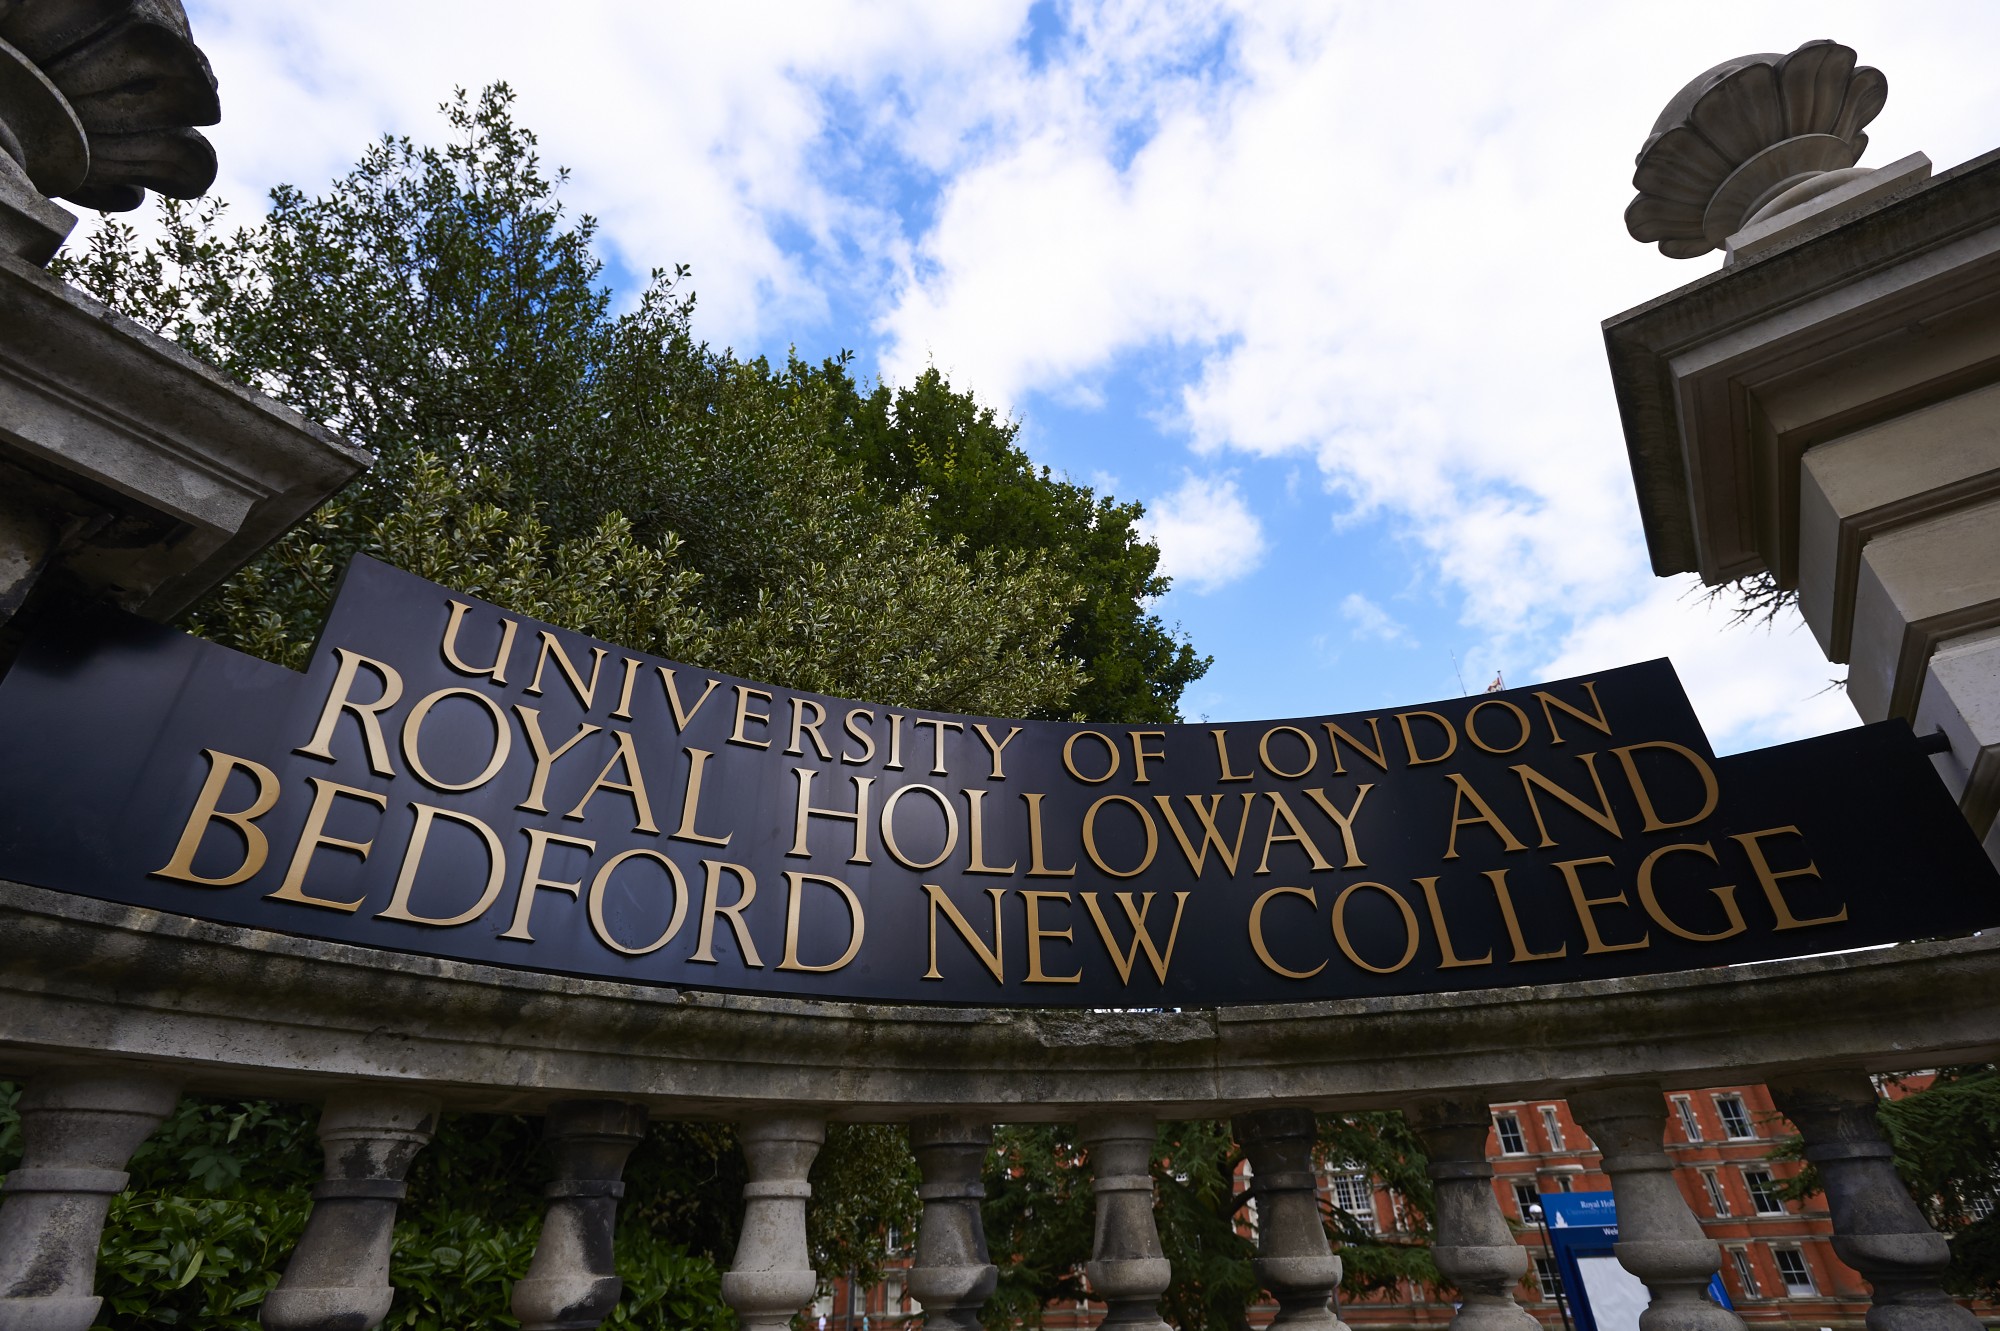 Entrance to Royal Holloway